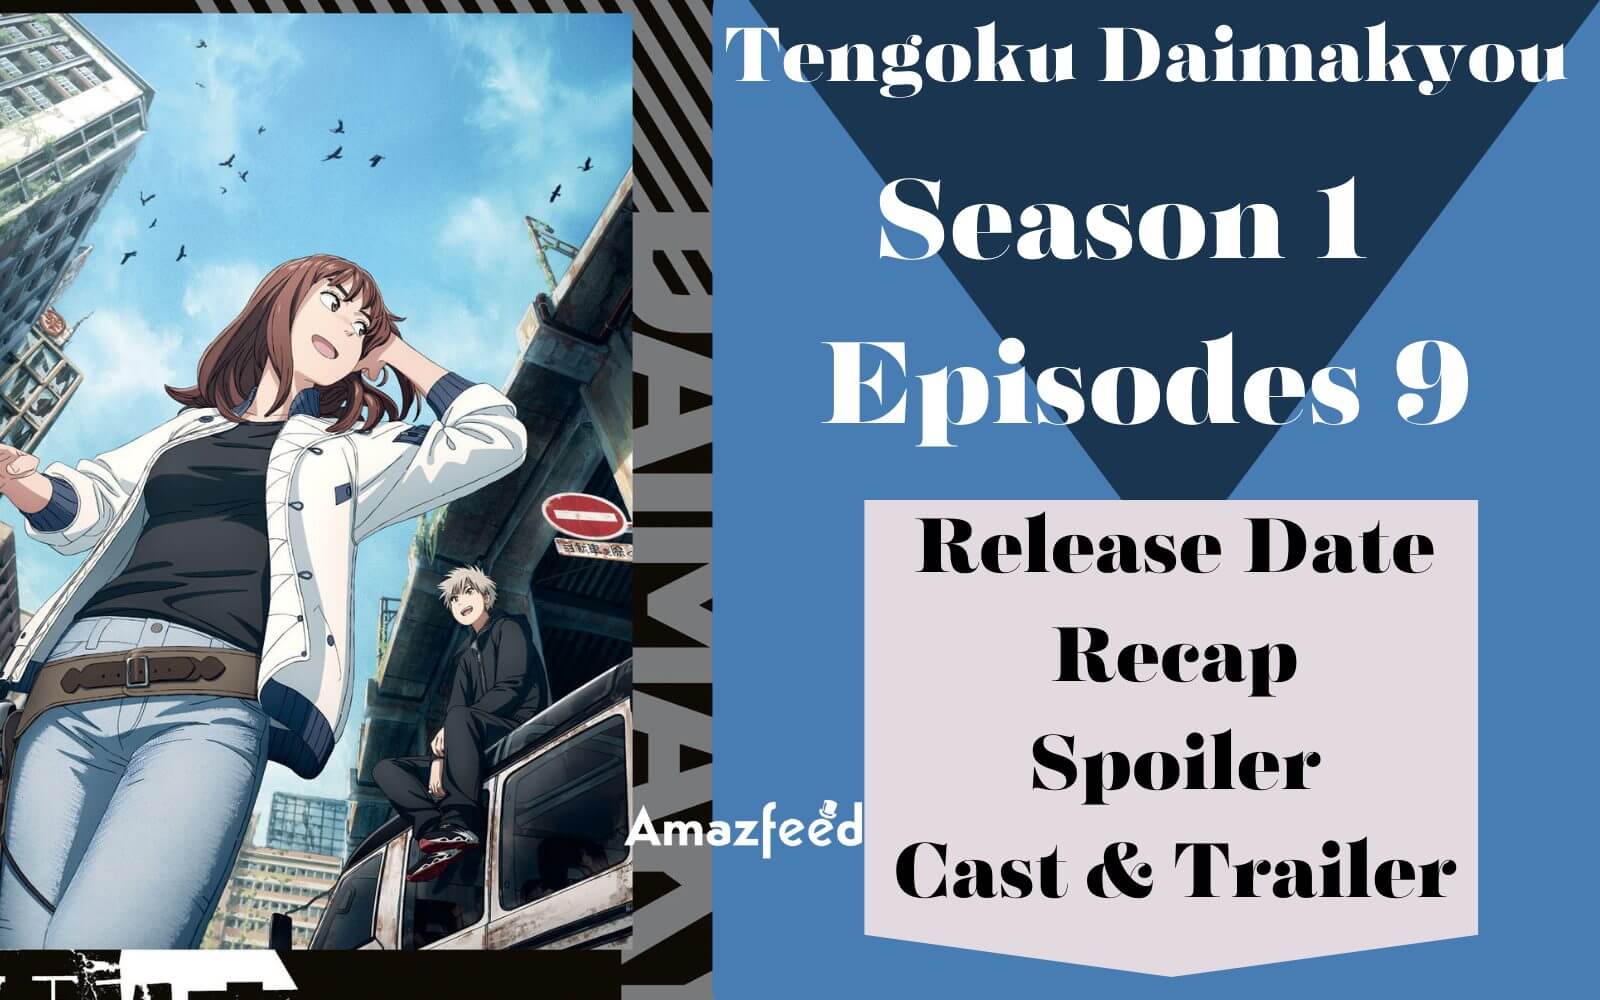 Tengoku Daimakyou episode 6 release time and date countdown